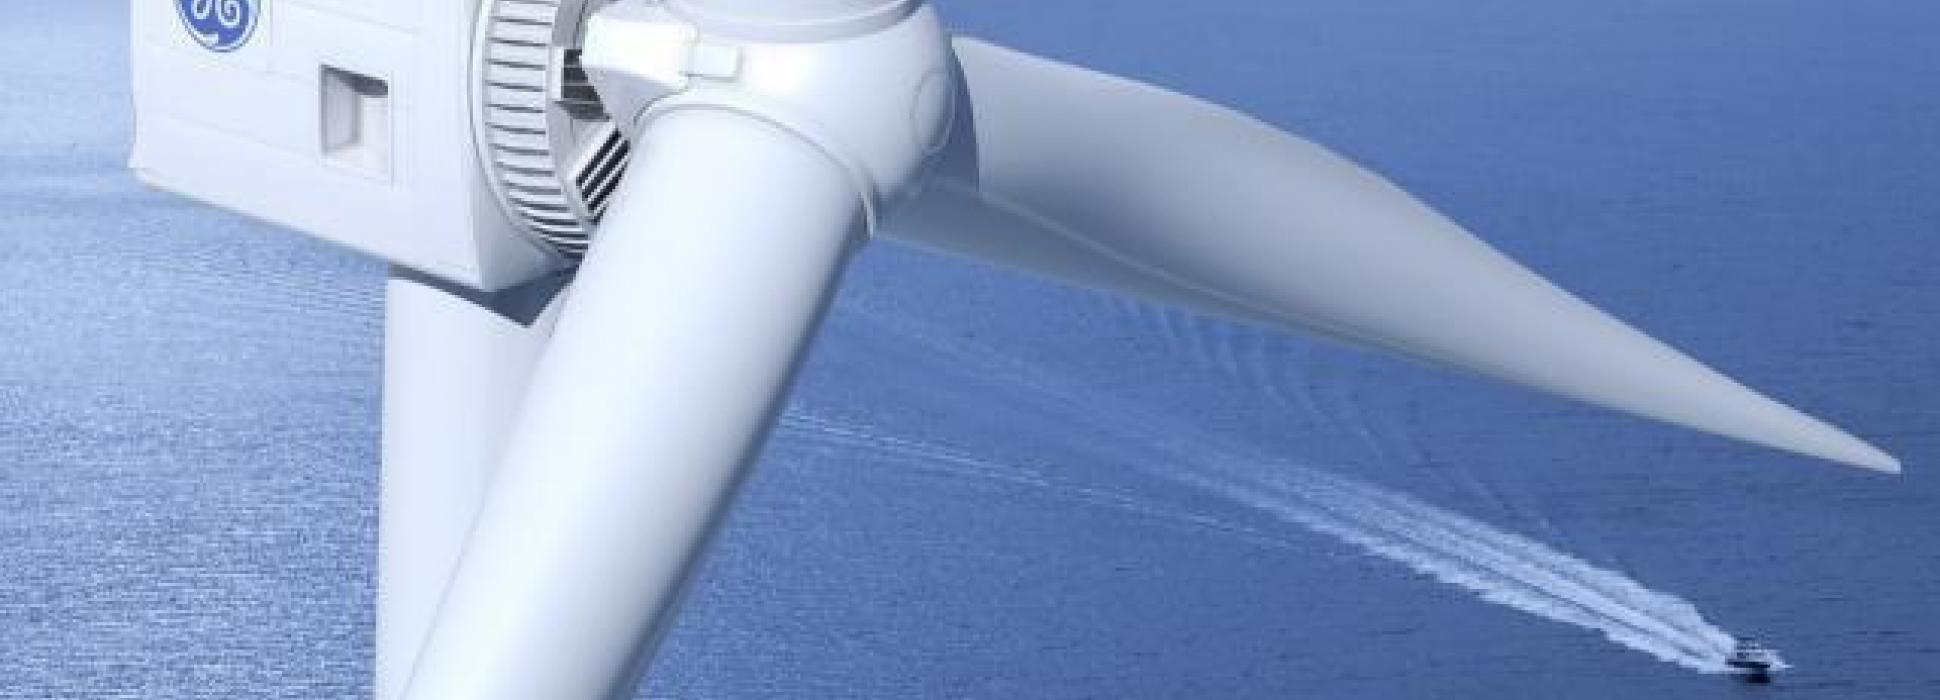 El aerogenerador en alta mar más poderoso del mundo fue revelado el 12 de julio en Saint-Nazaire